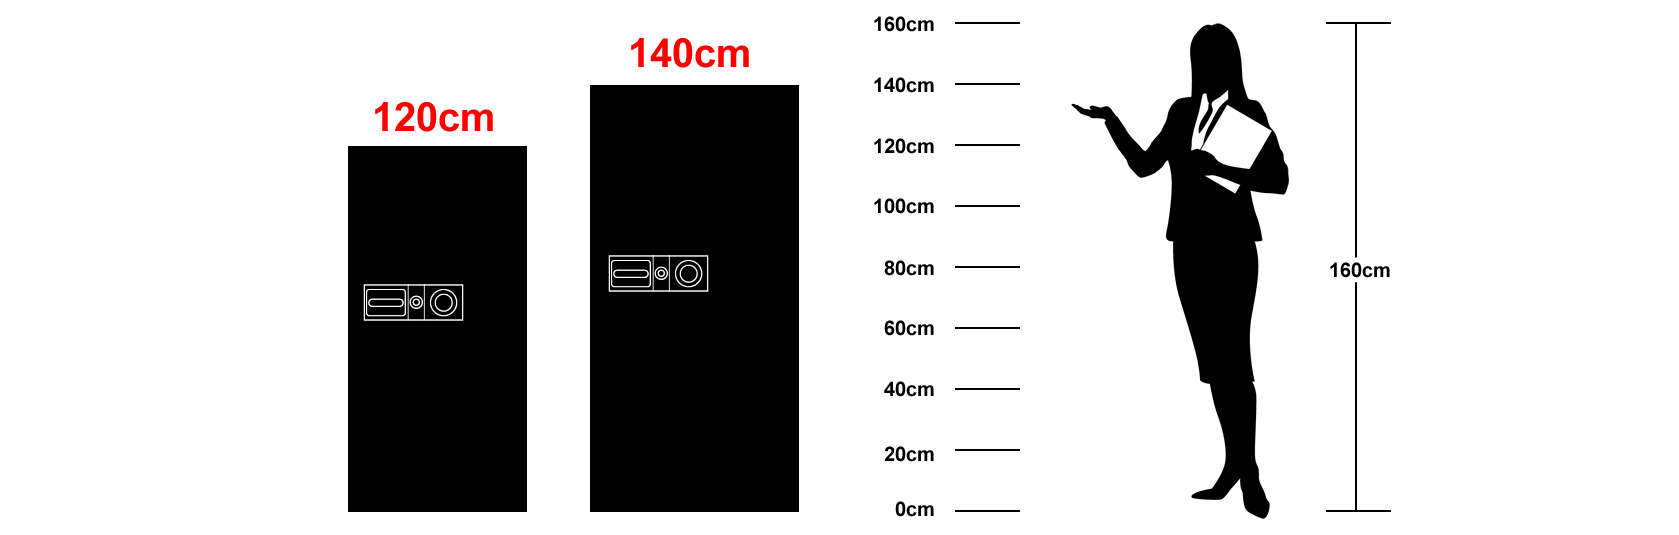 120cmȏ`140cm